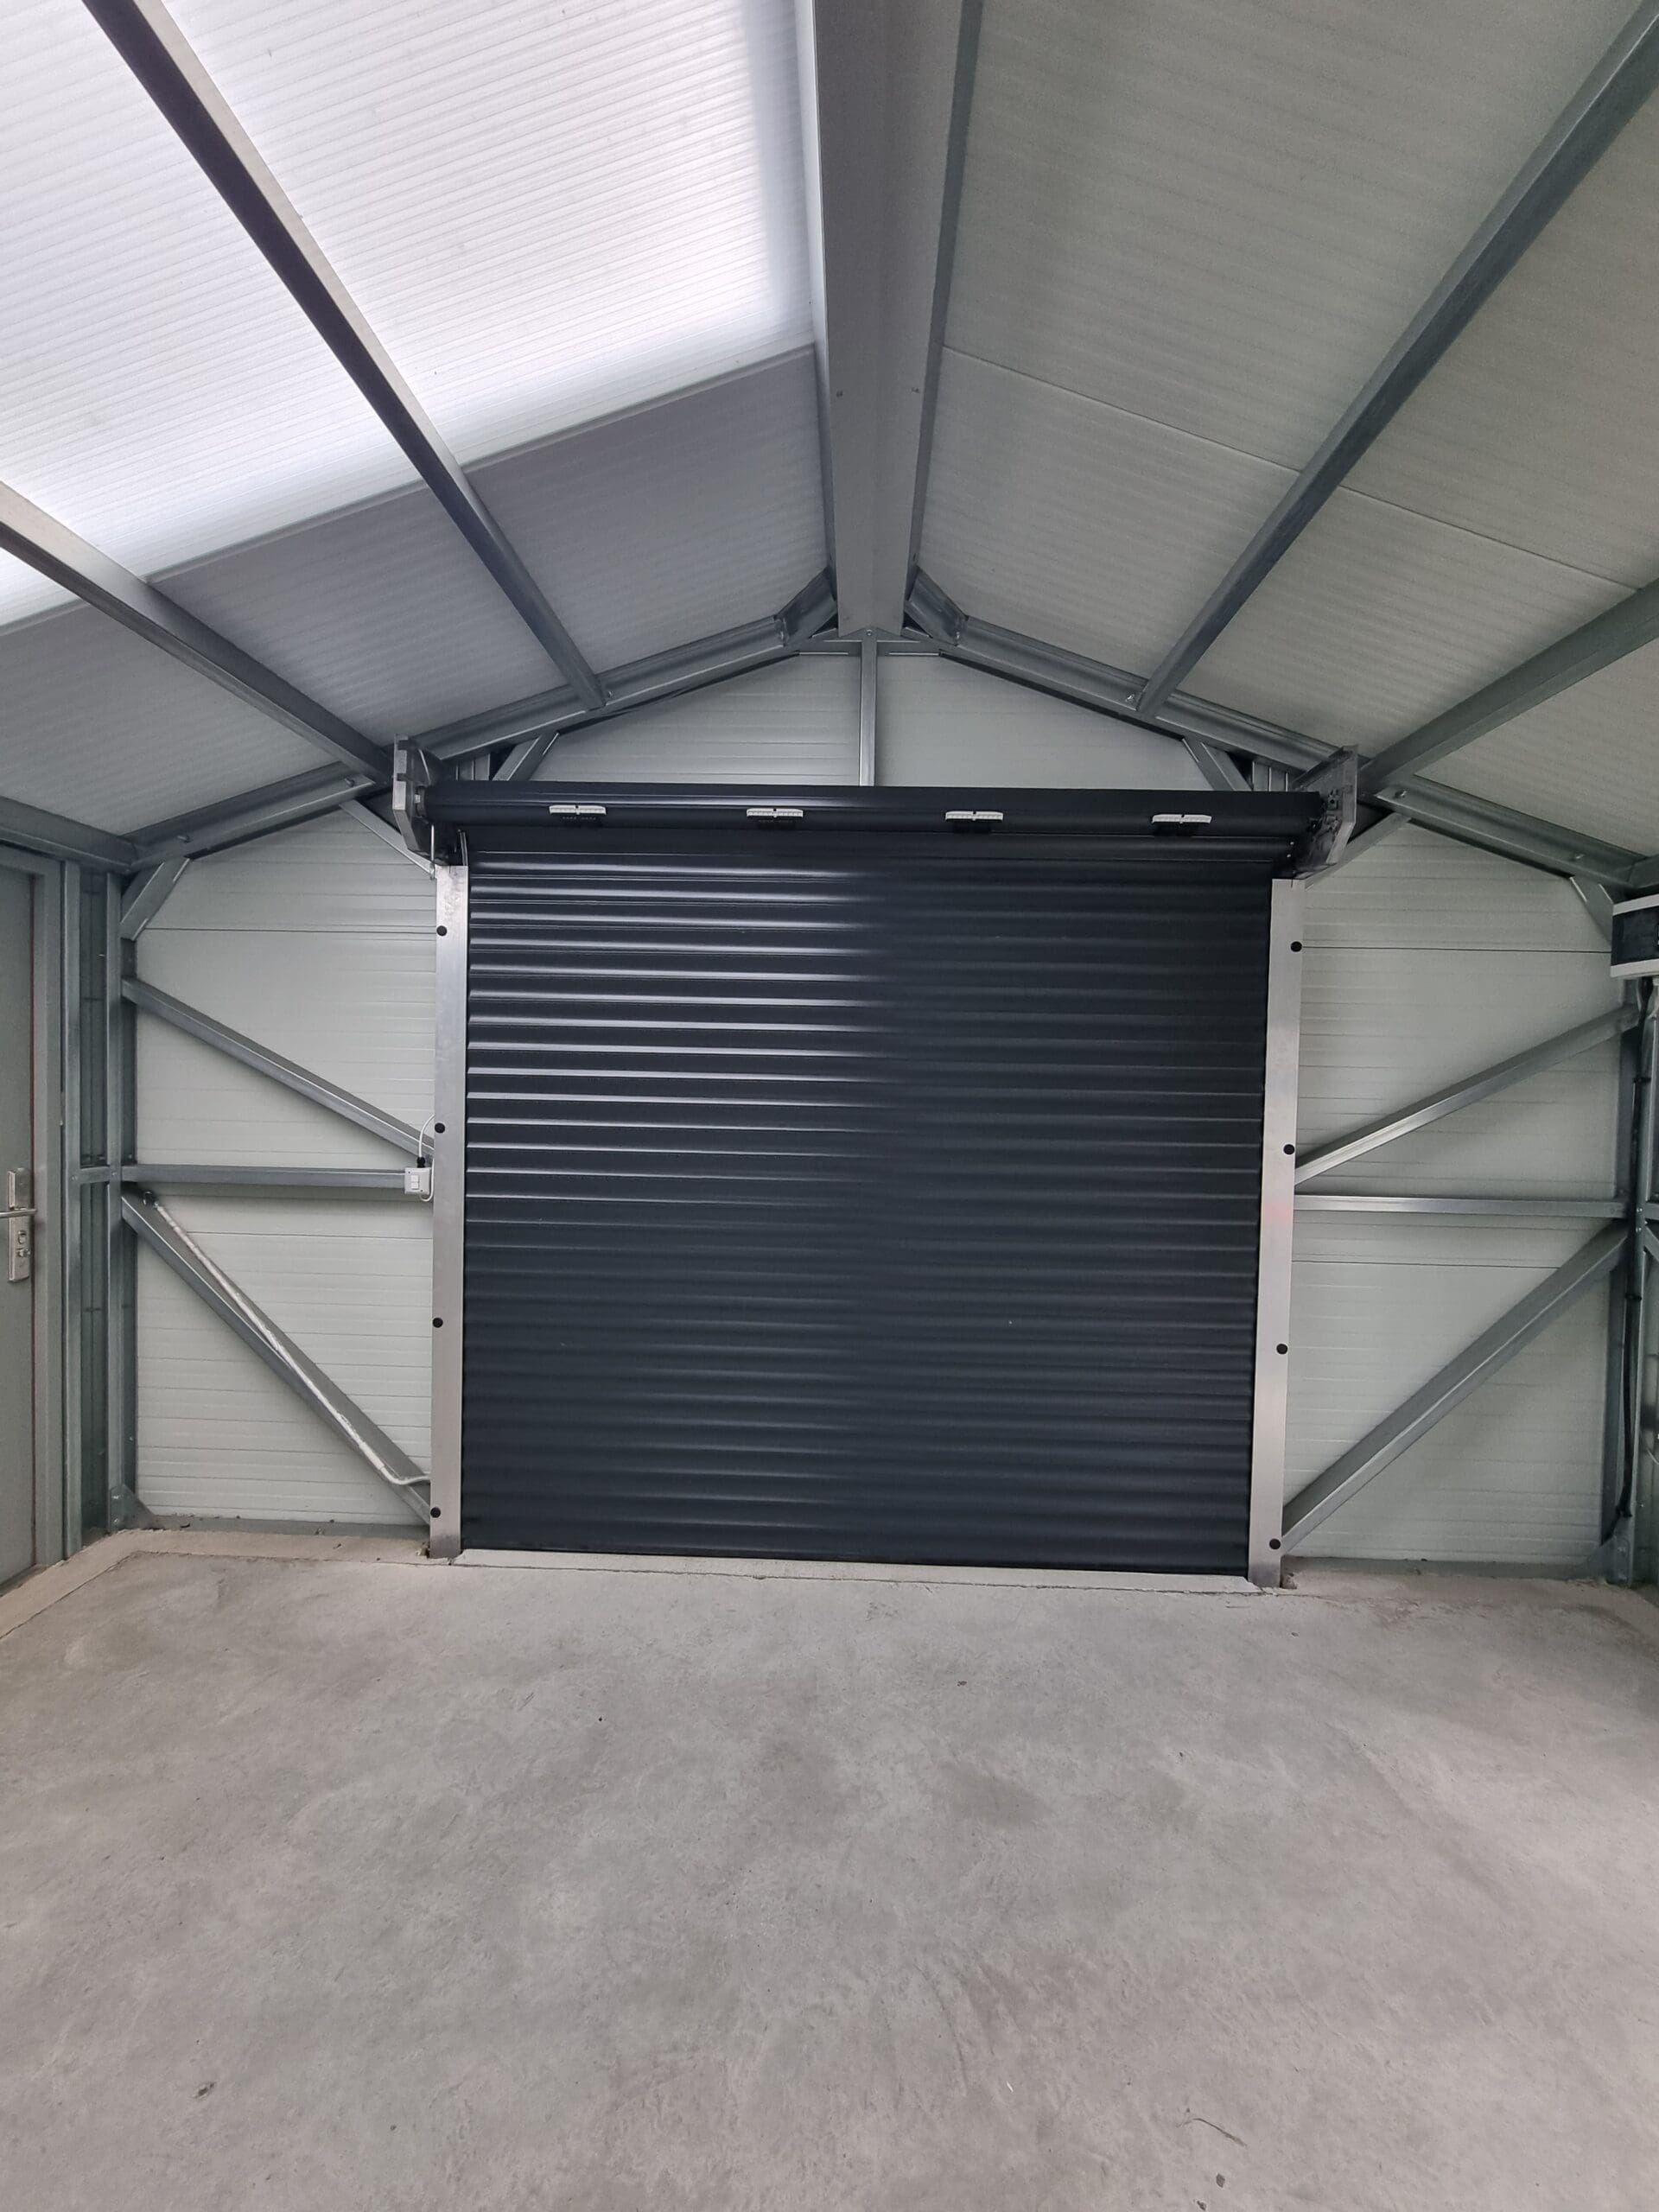 Insulated garage roller door